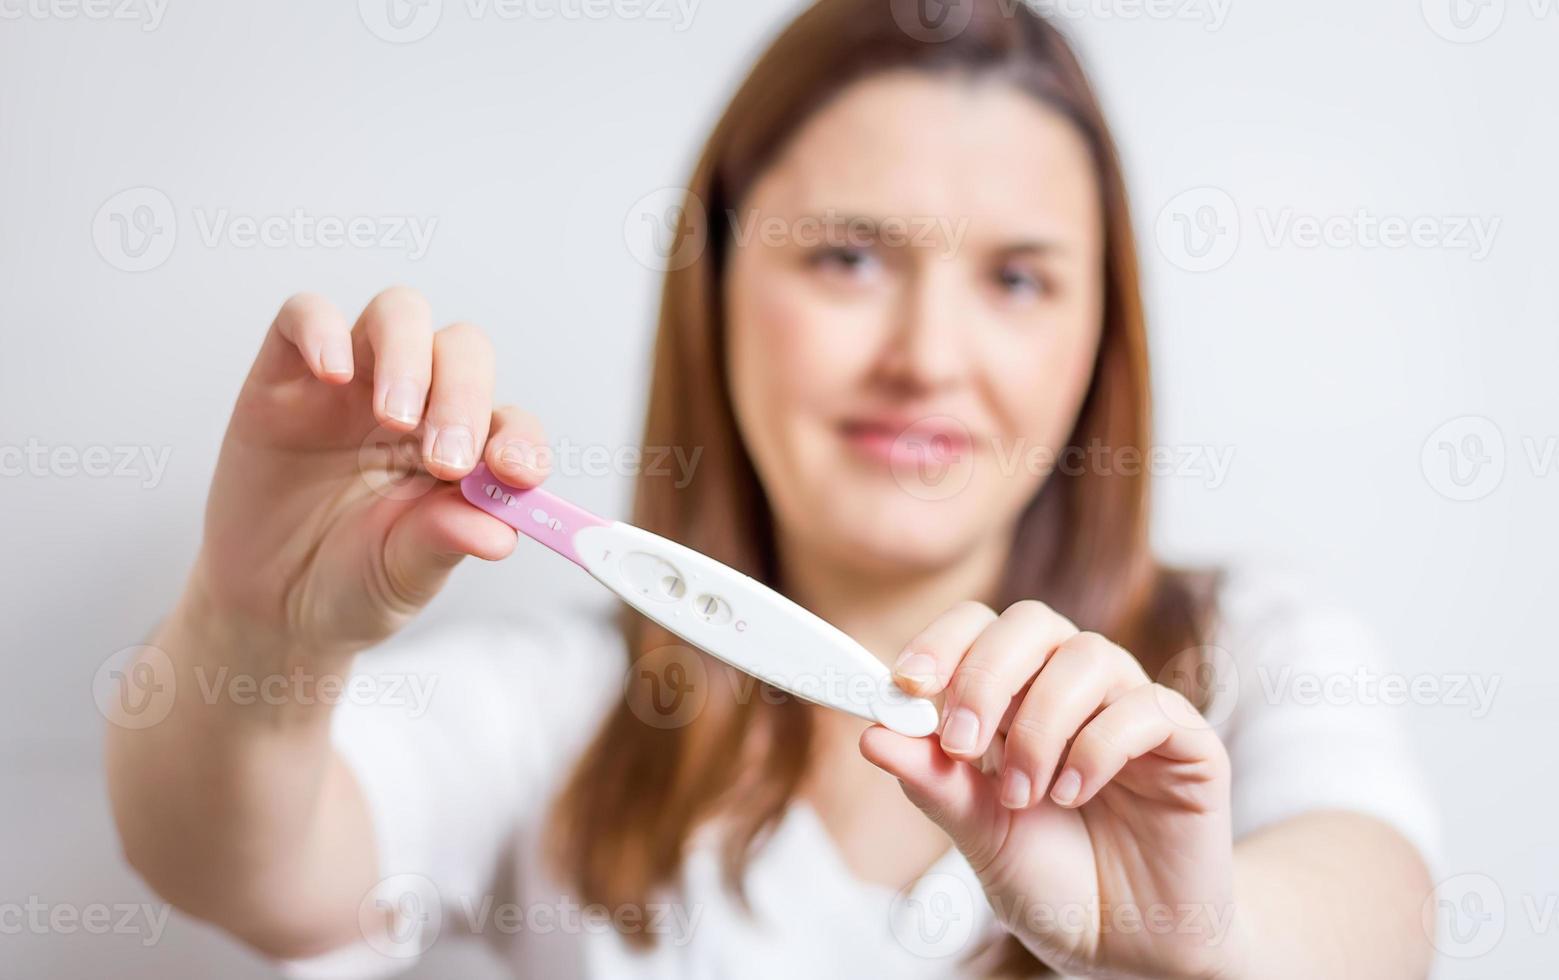 mulher feliz, mostrando seu teste de gravidez positivo foto